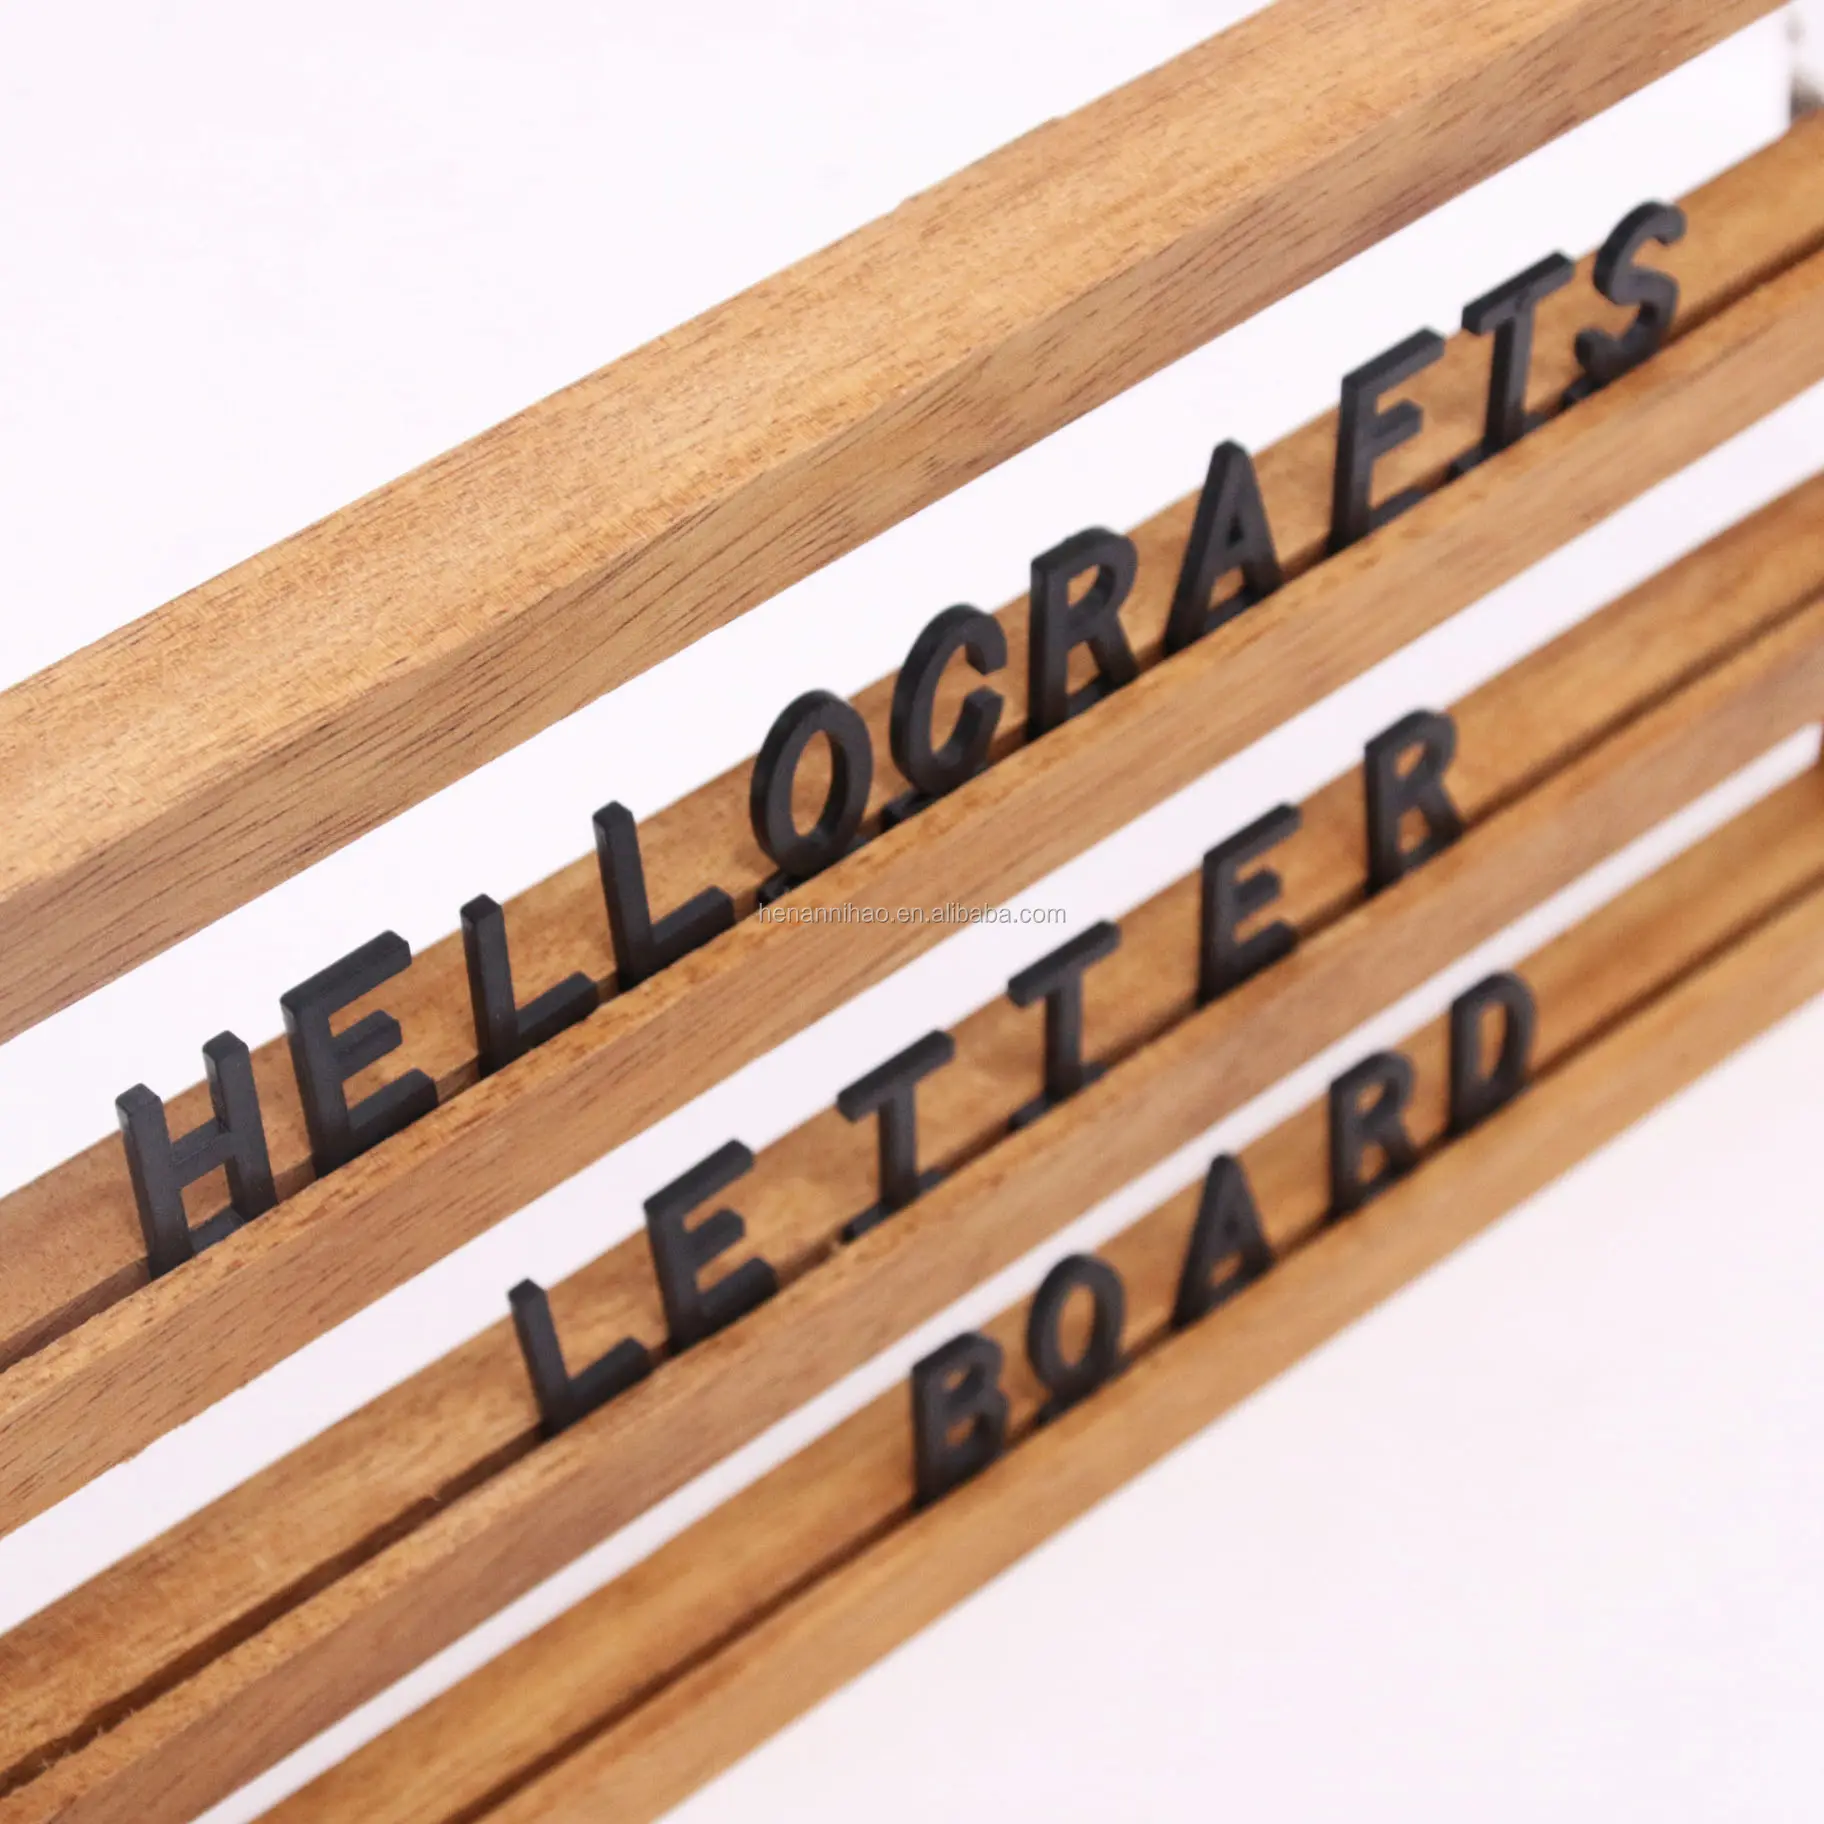 Amazon hot sale Wall Mount Letter Wooden Floating Shelf Letter Board oak /pine Solid